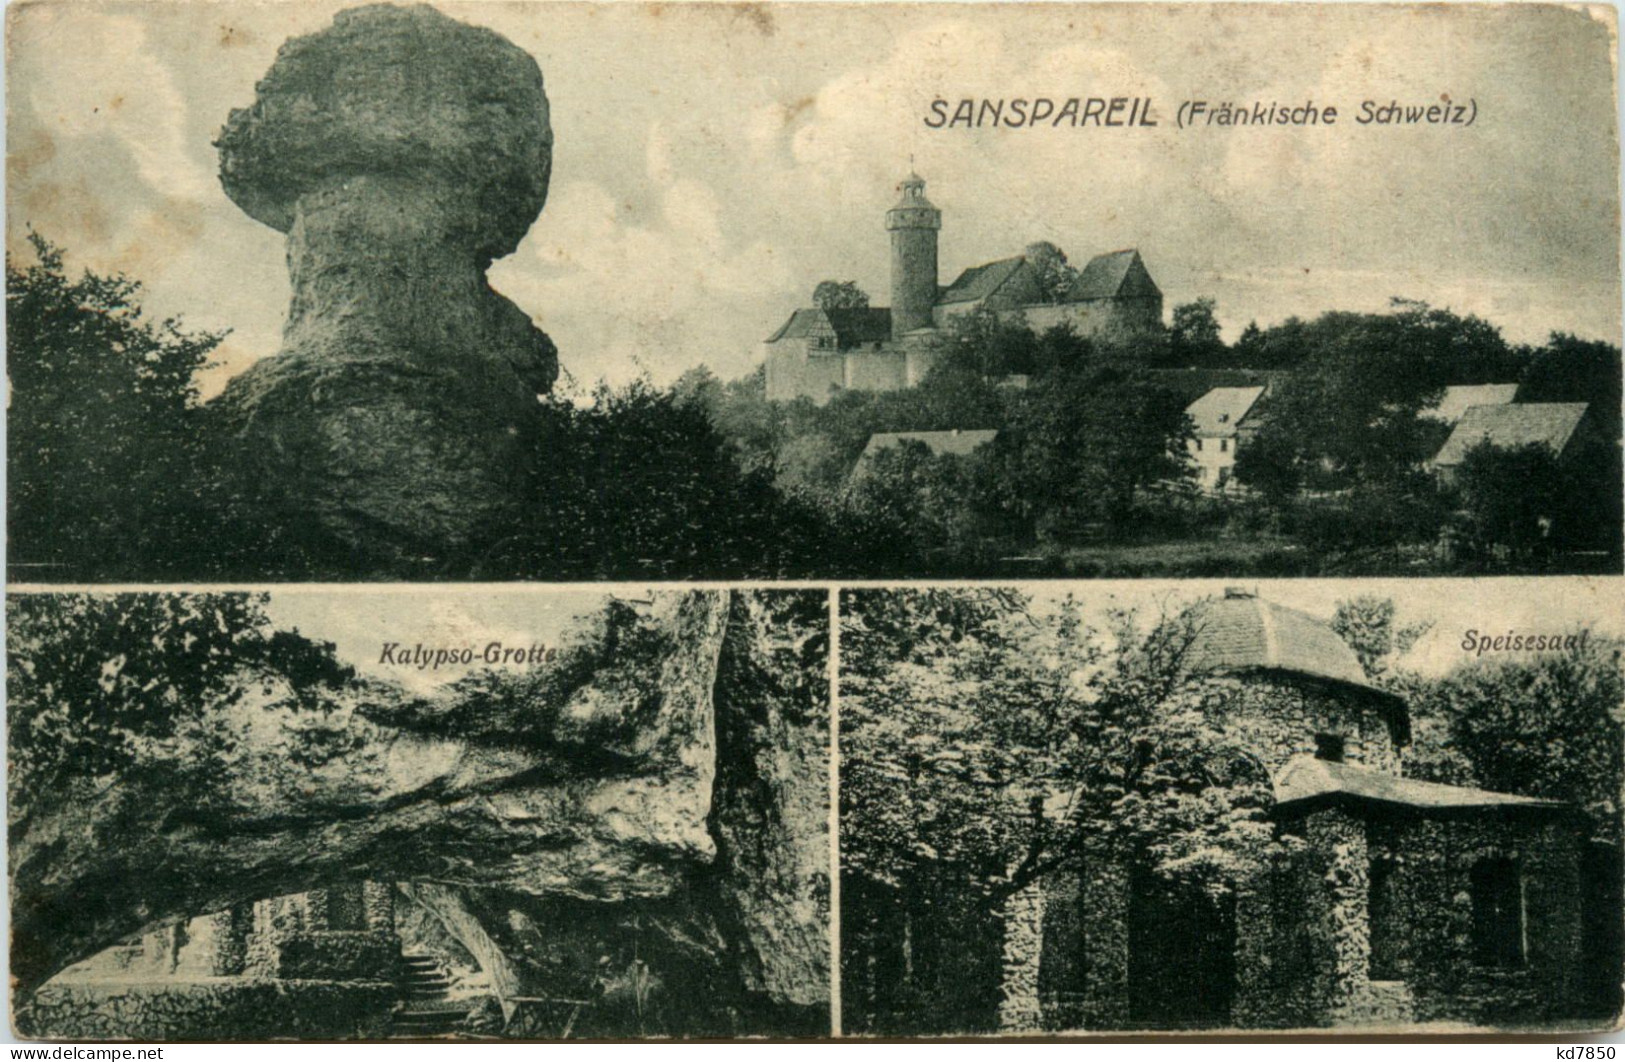 Sanspareil, Fränkische Schweiz - Kulmbach